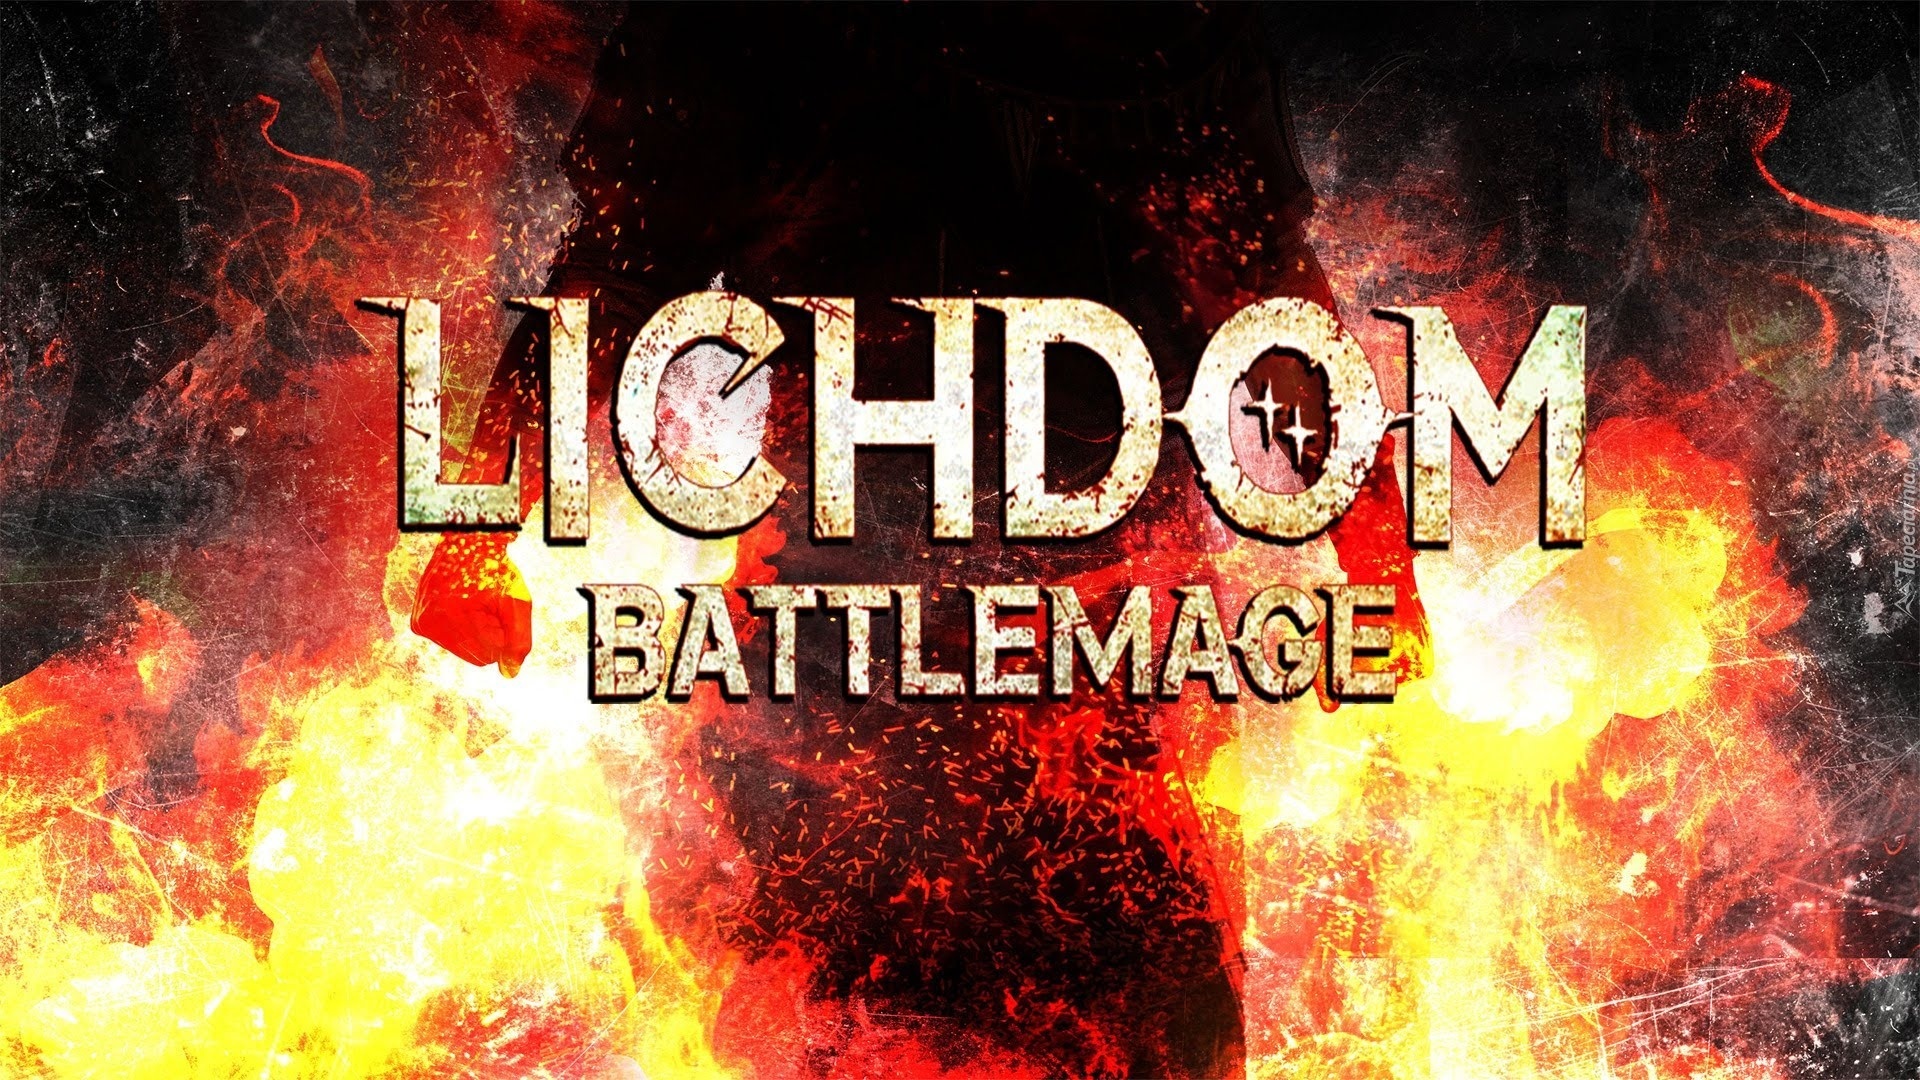 lichdom battlemage xbox one download